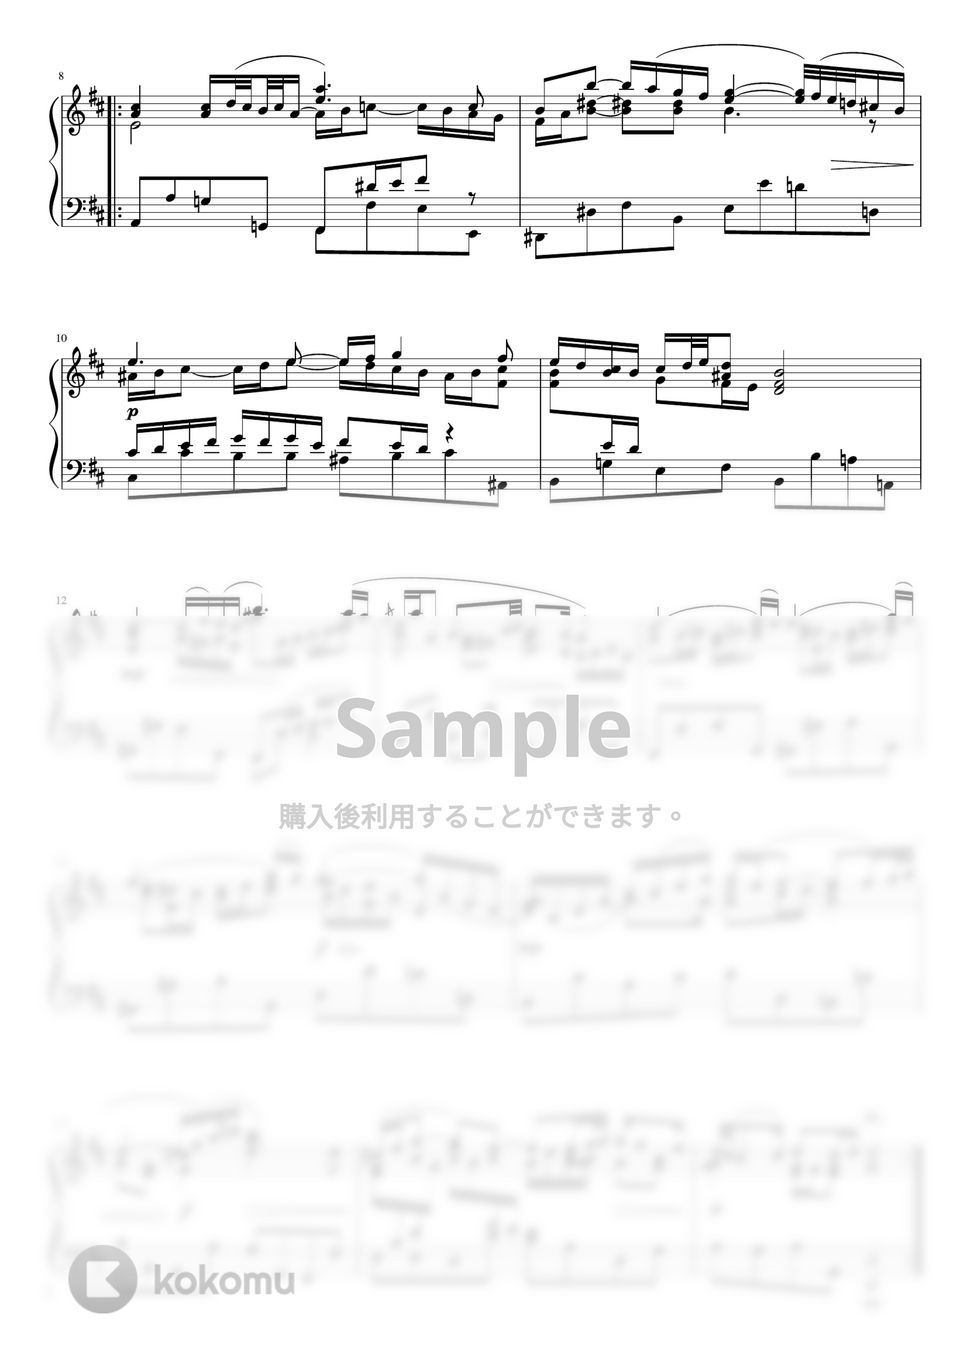 バッハ - G線上のアリア (Ddur・ピアノソロ中級) by pfkaori